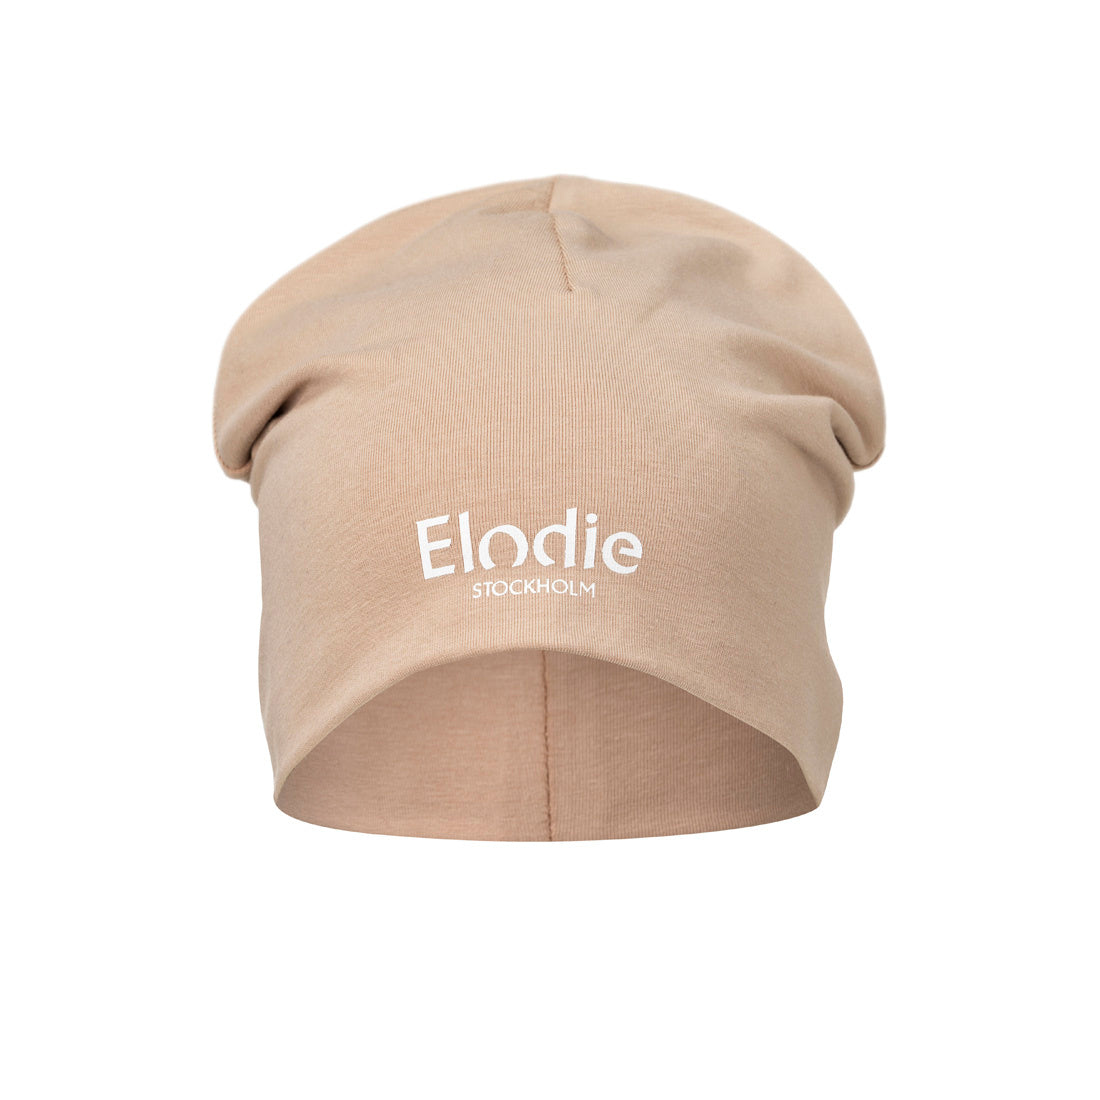 Detalles de Elodie - Cap - Blushing Pink - 6-12 meses